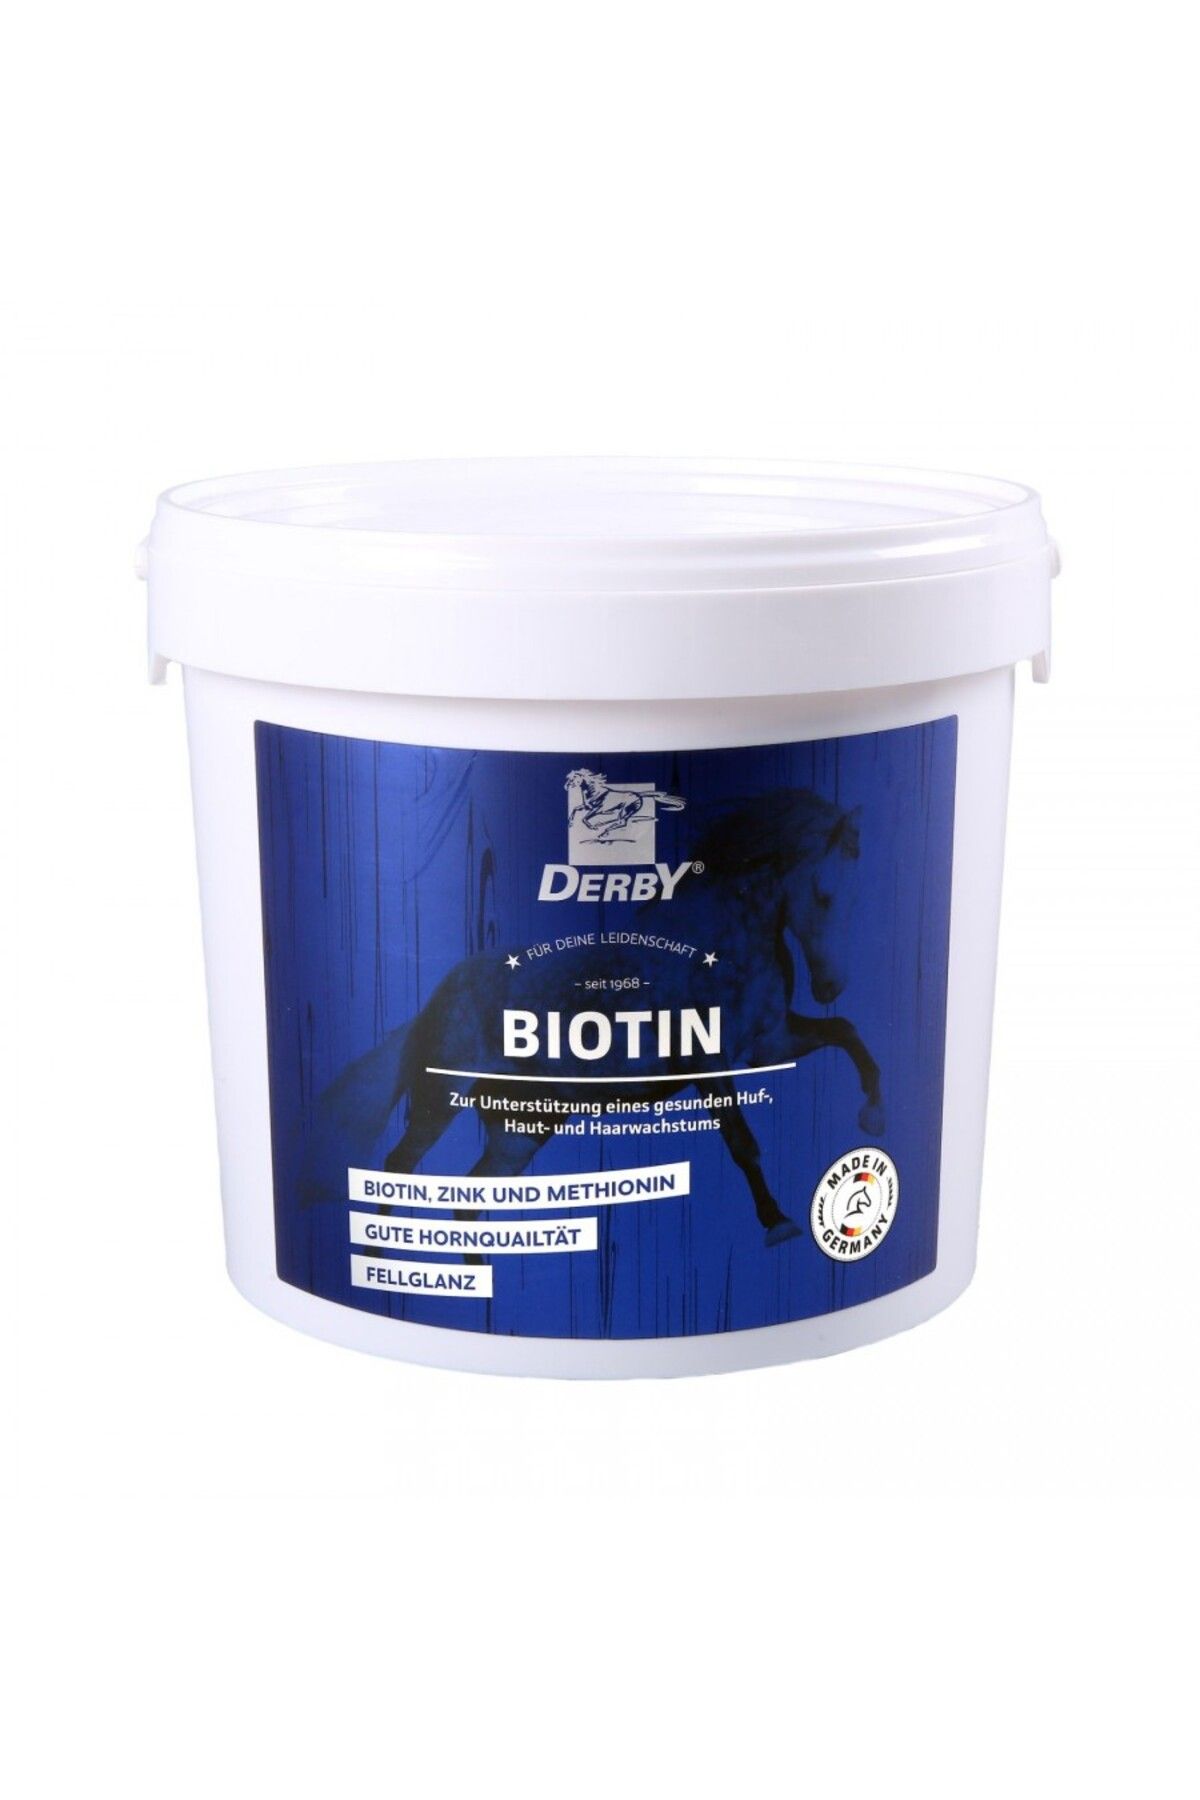 Derby Biotin 2,5 Kg